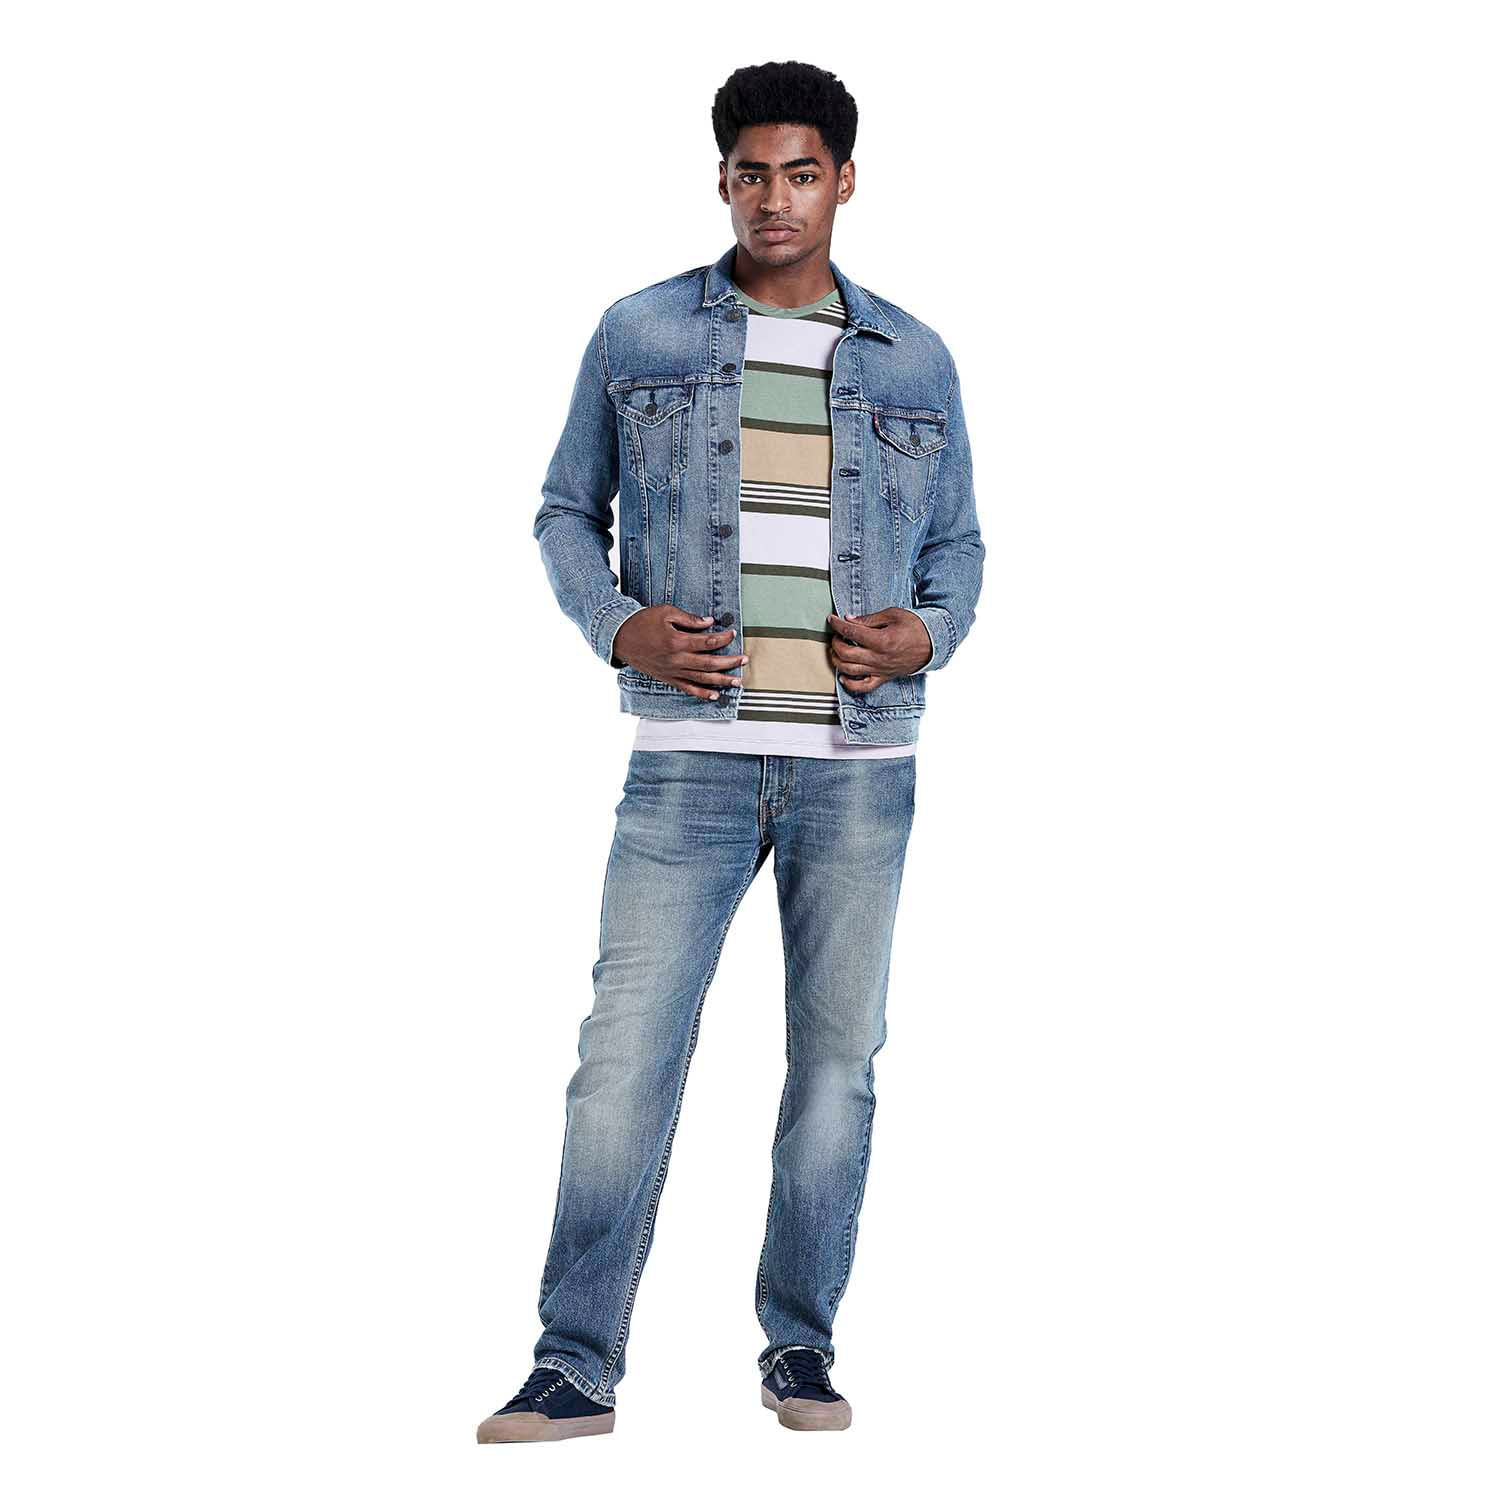 levis jaqueta jeans